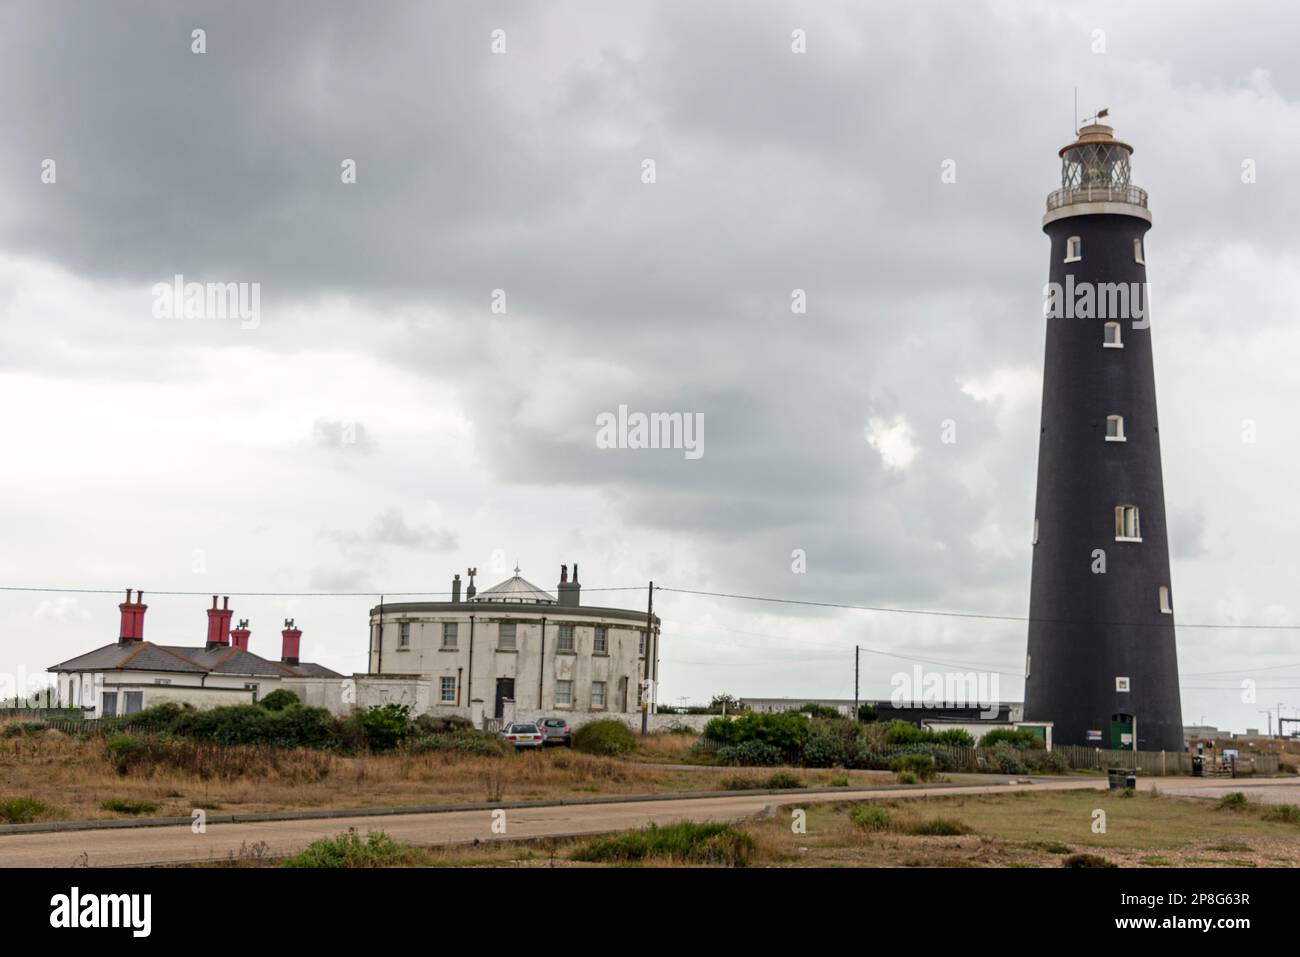 Le grand Old Lighthouse indépendant désaffecté dans une réserve naturelle nationale à Dungeness Beach, près de Romey Marsh dans le Kent, en Grande-Bretagne Banque D'Images